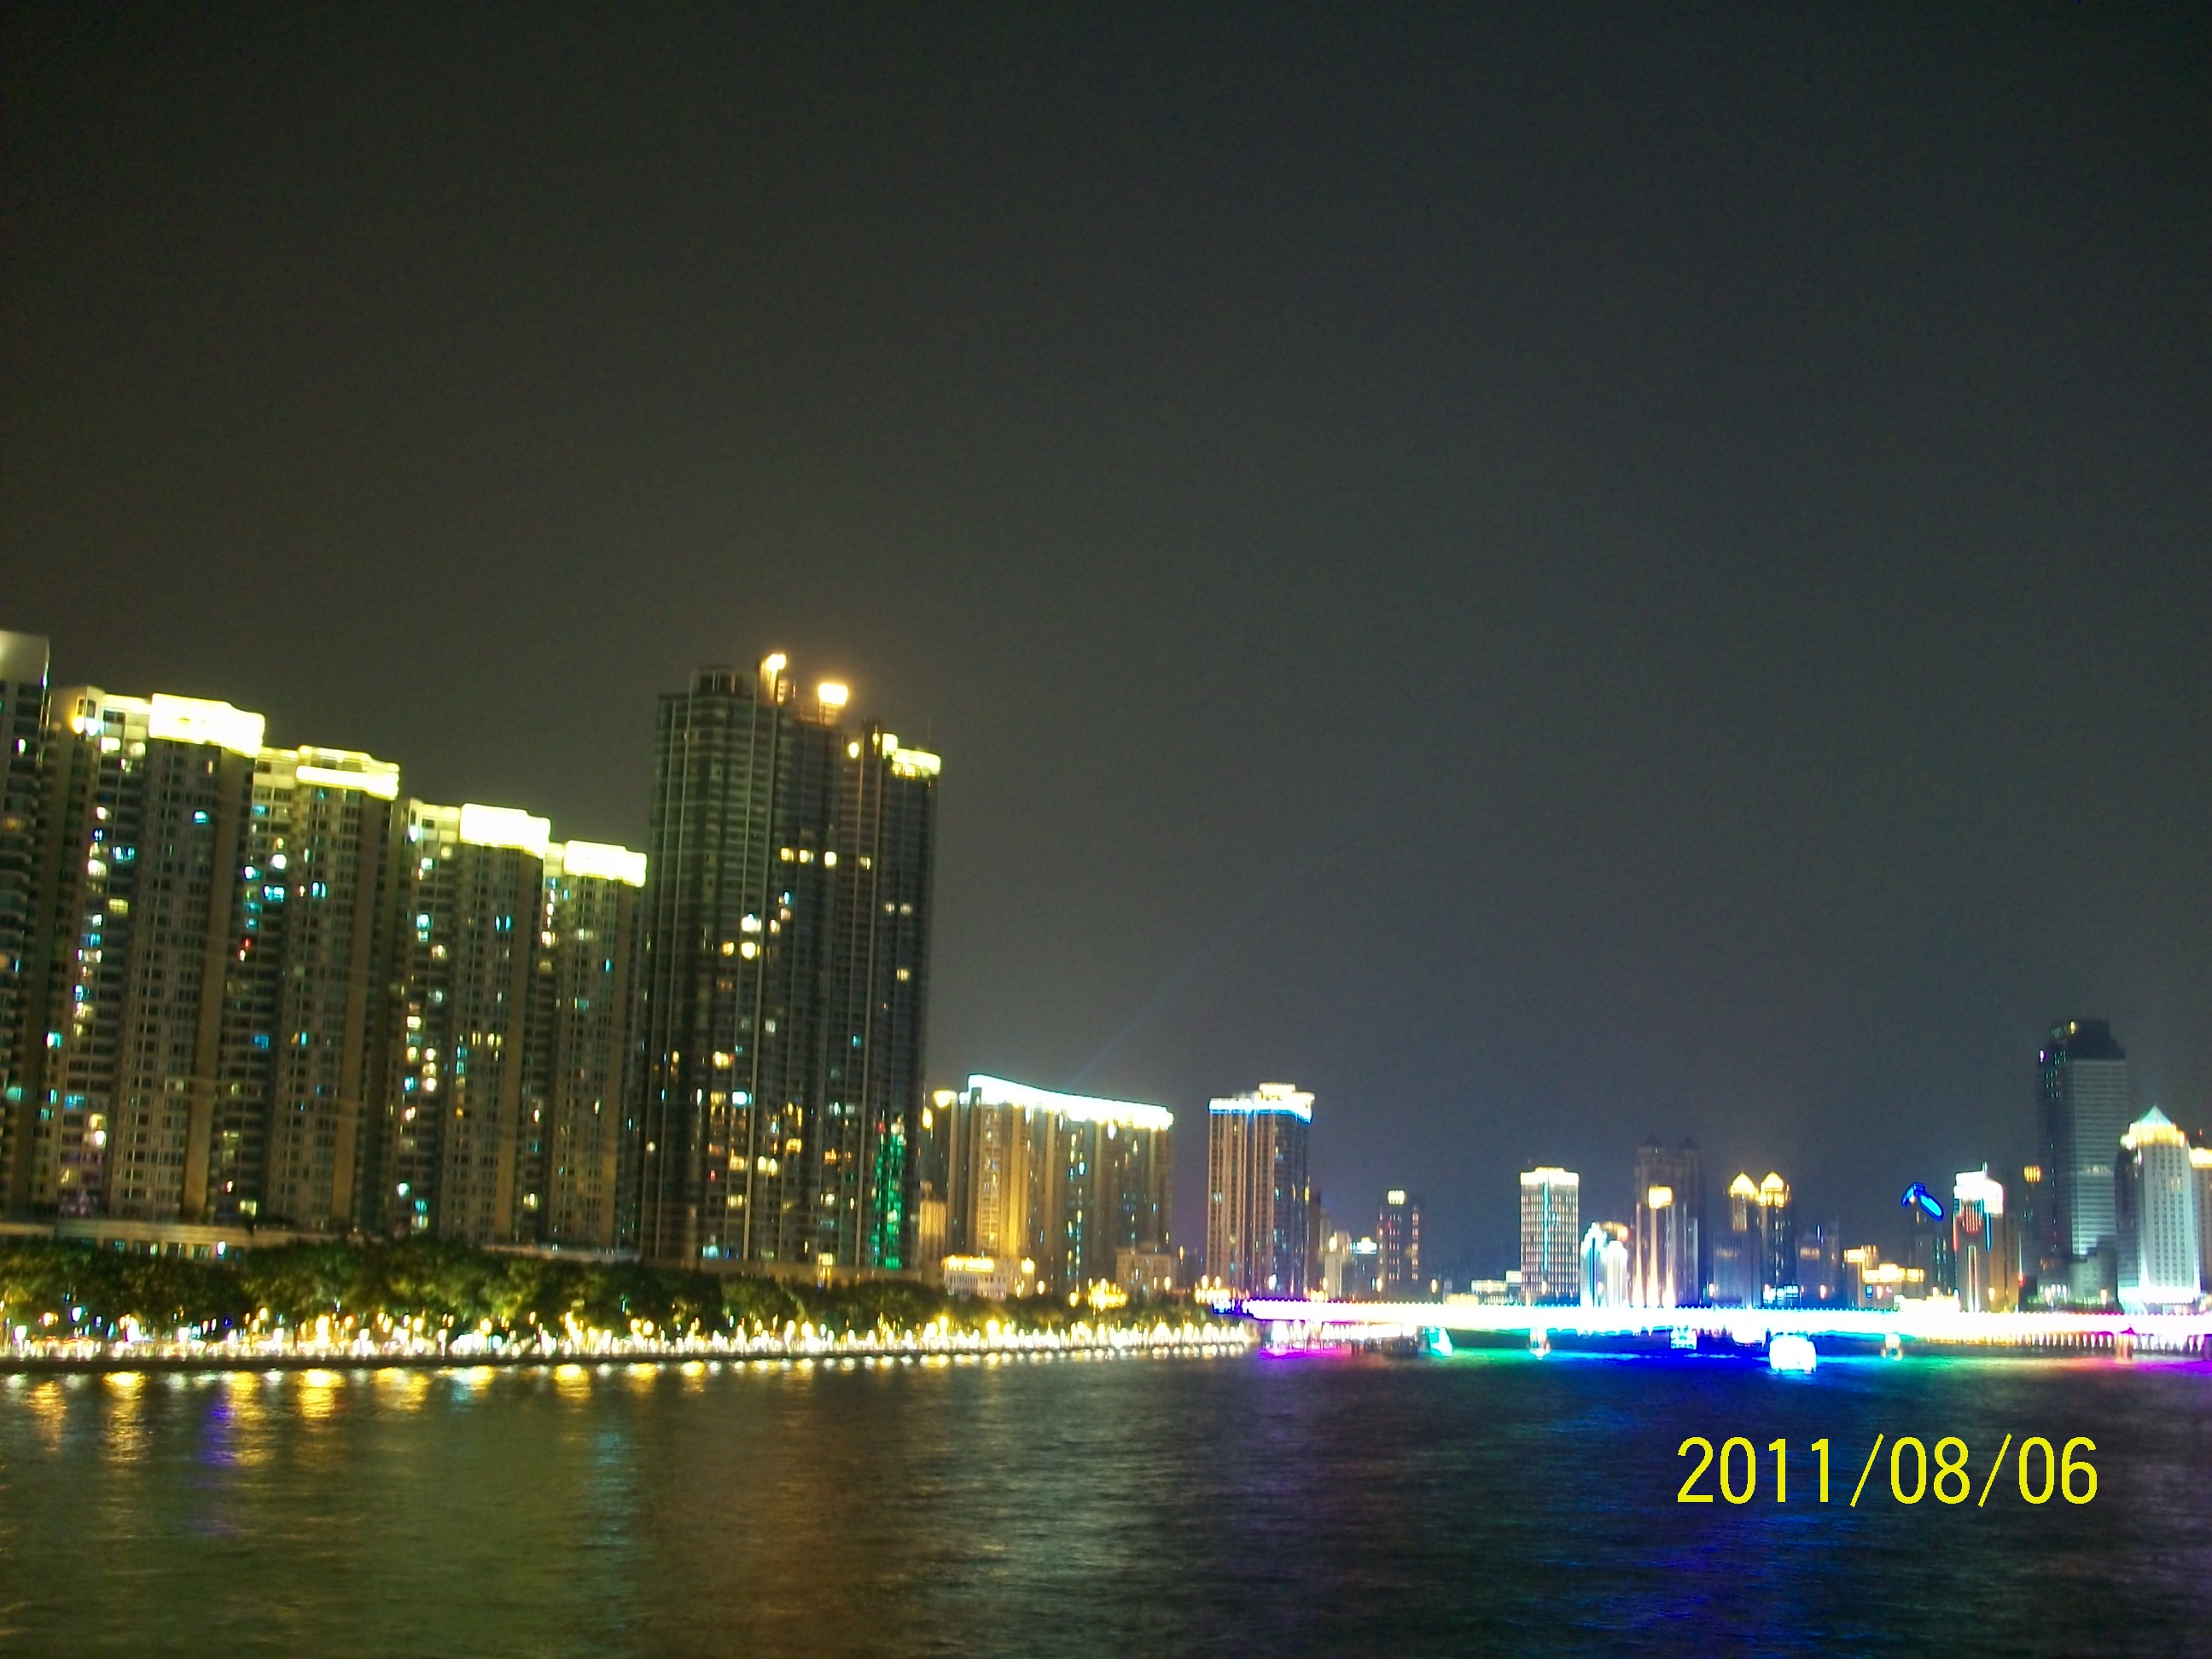 广州海印桥夜景166 / 作者:完美夏天 / 帖子ID:873